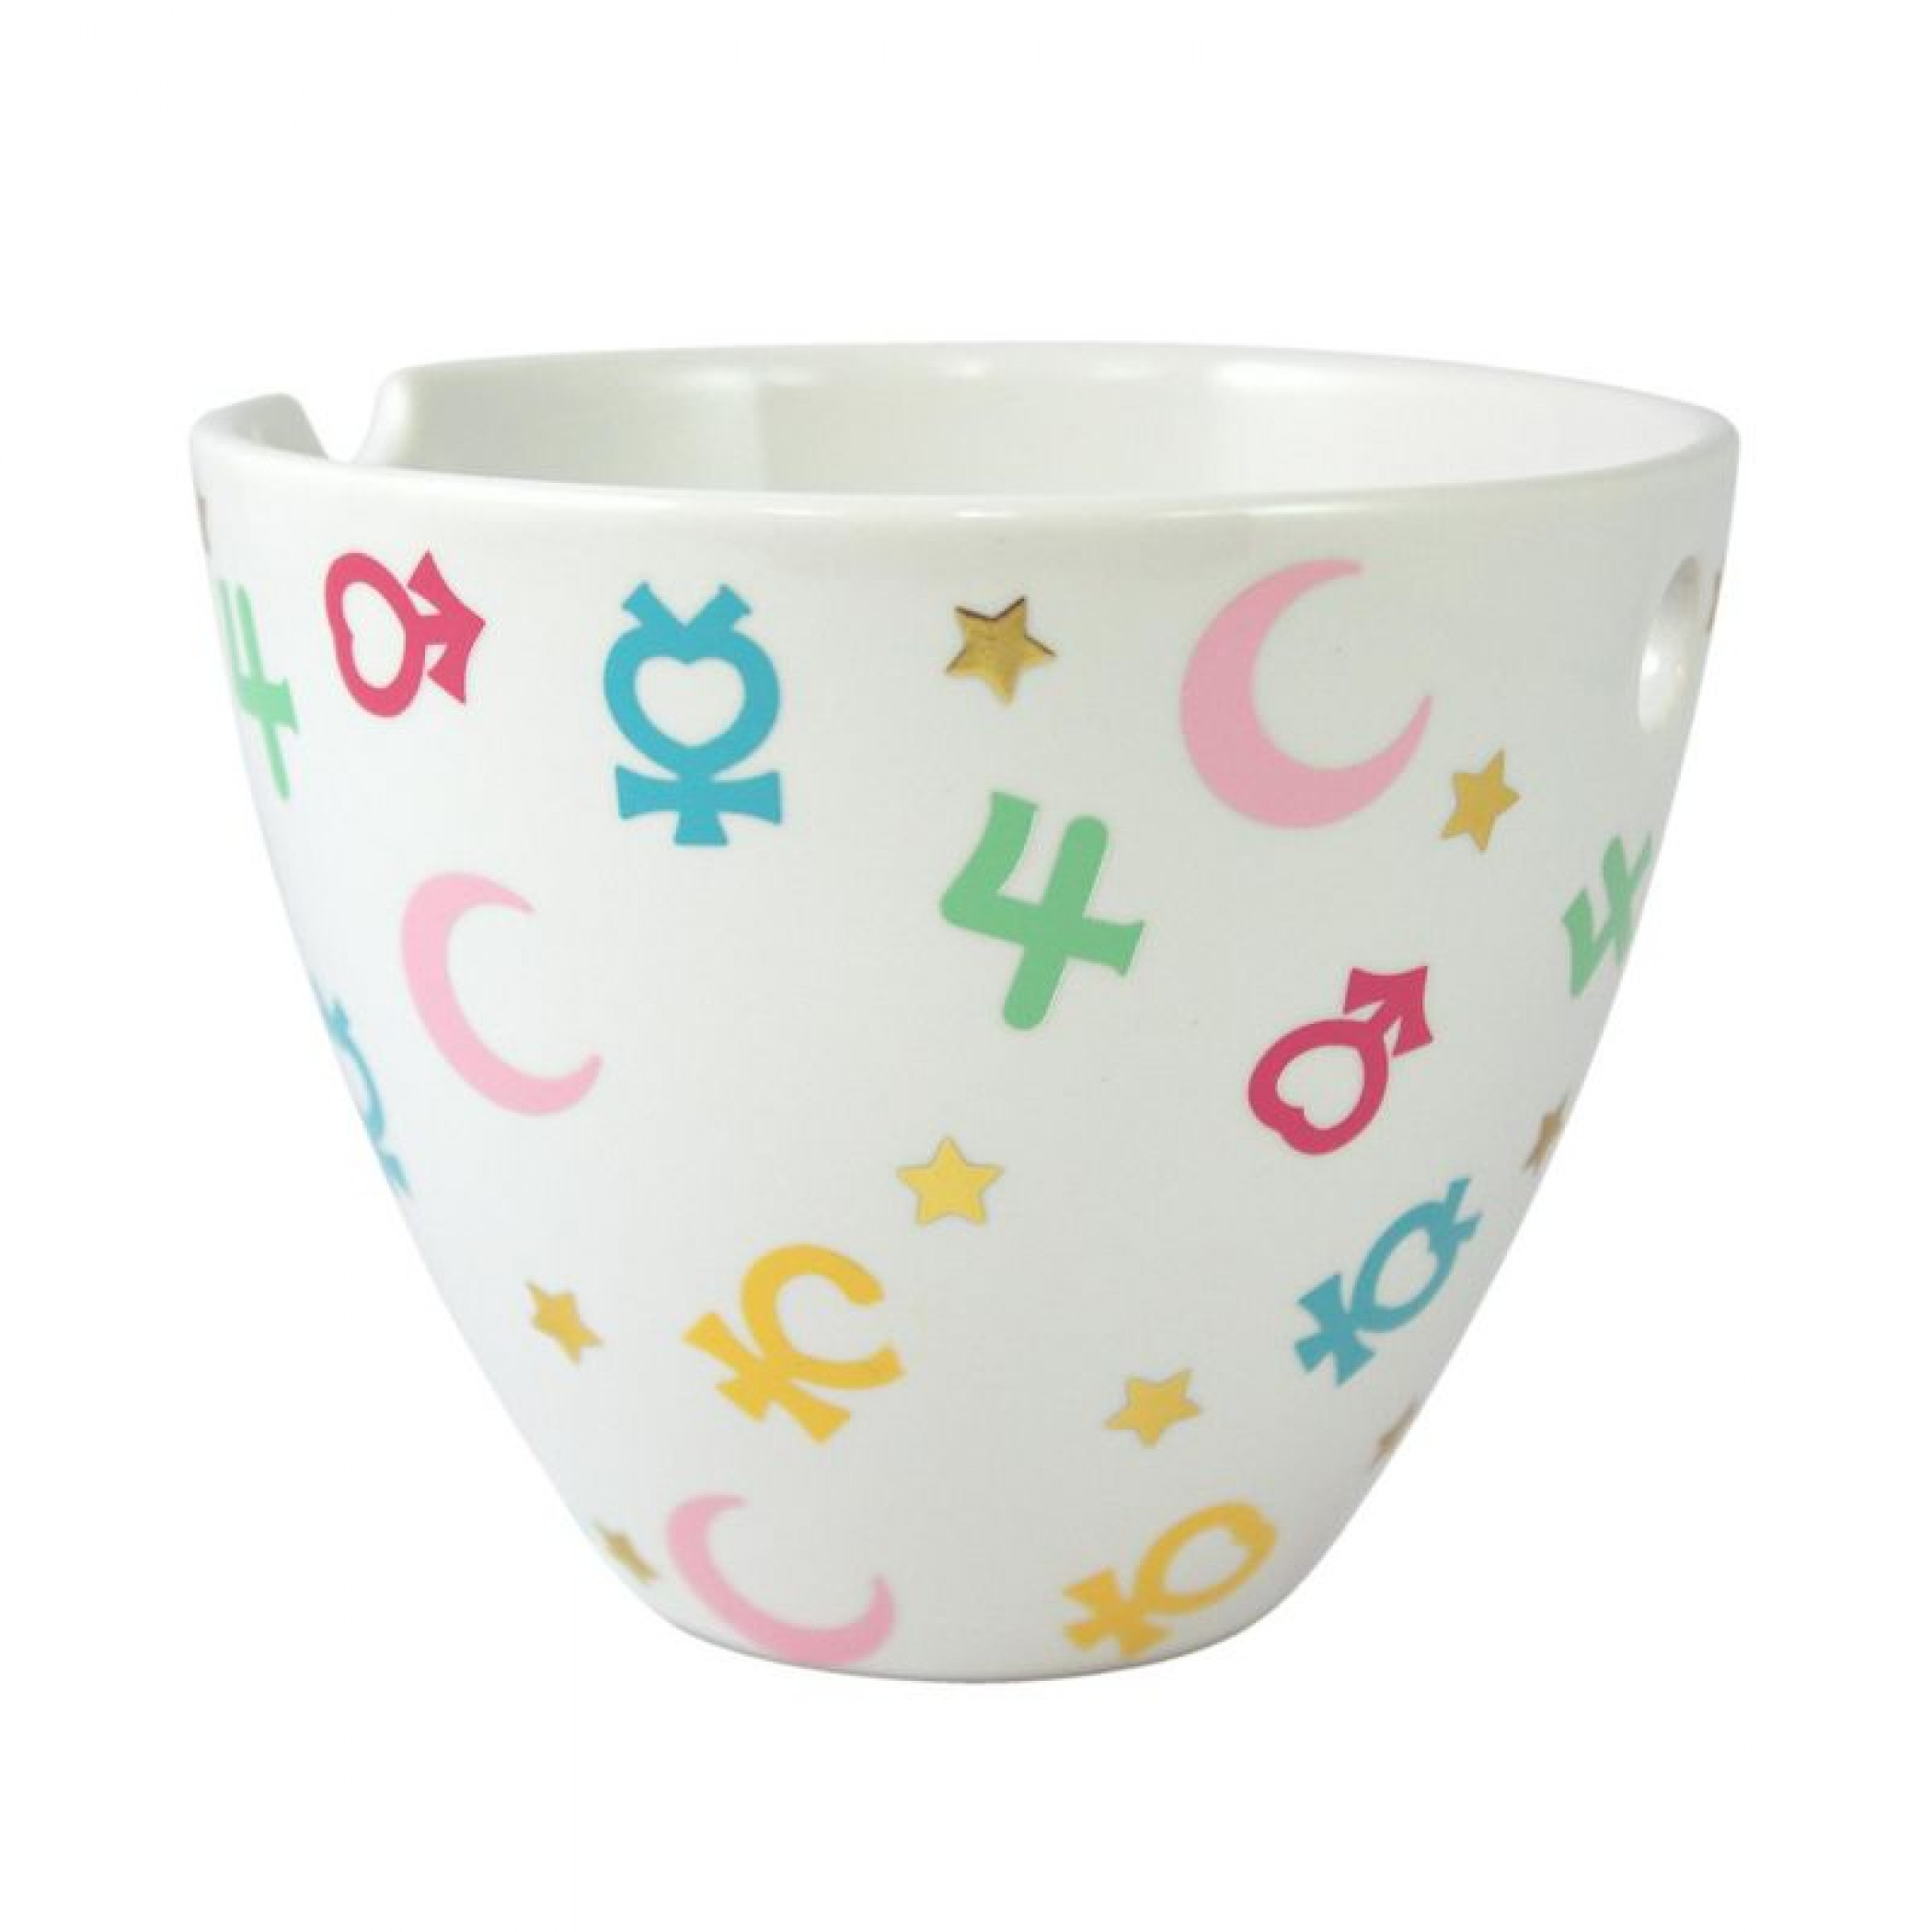 Sailor Moon Symbols Ramen Bowl